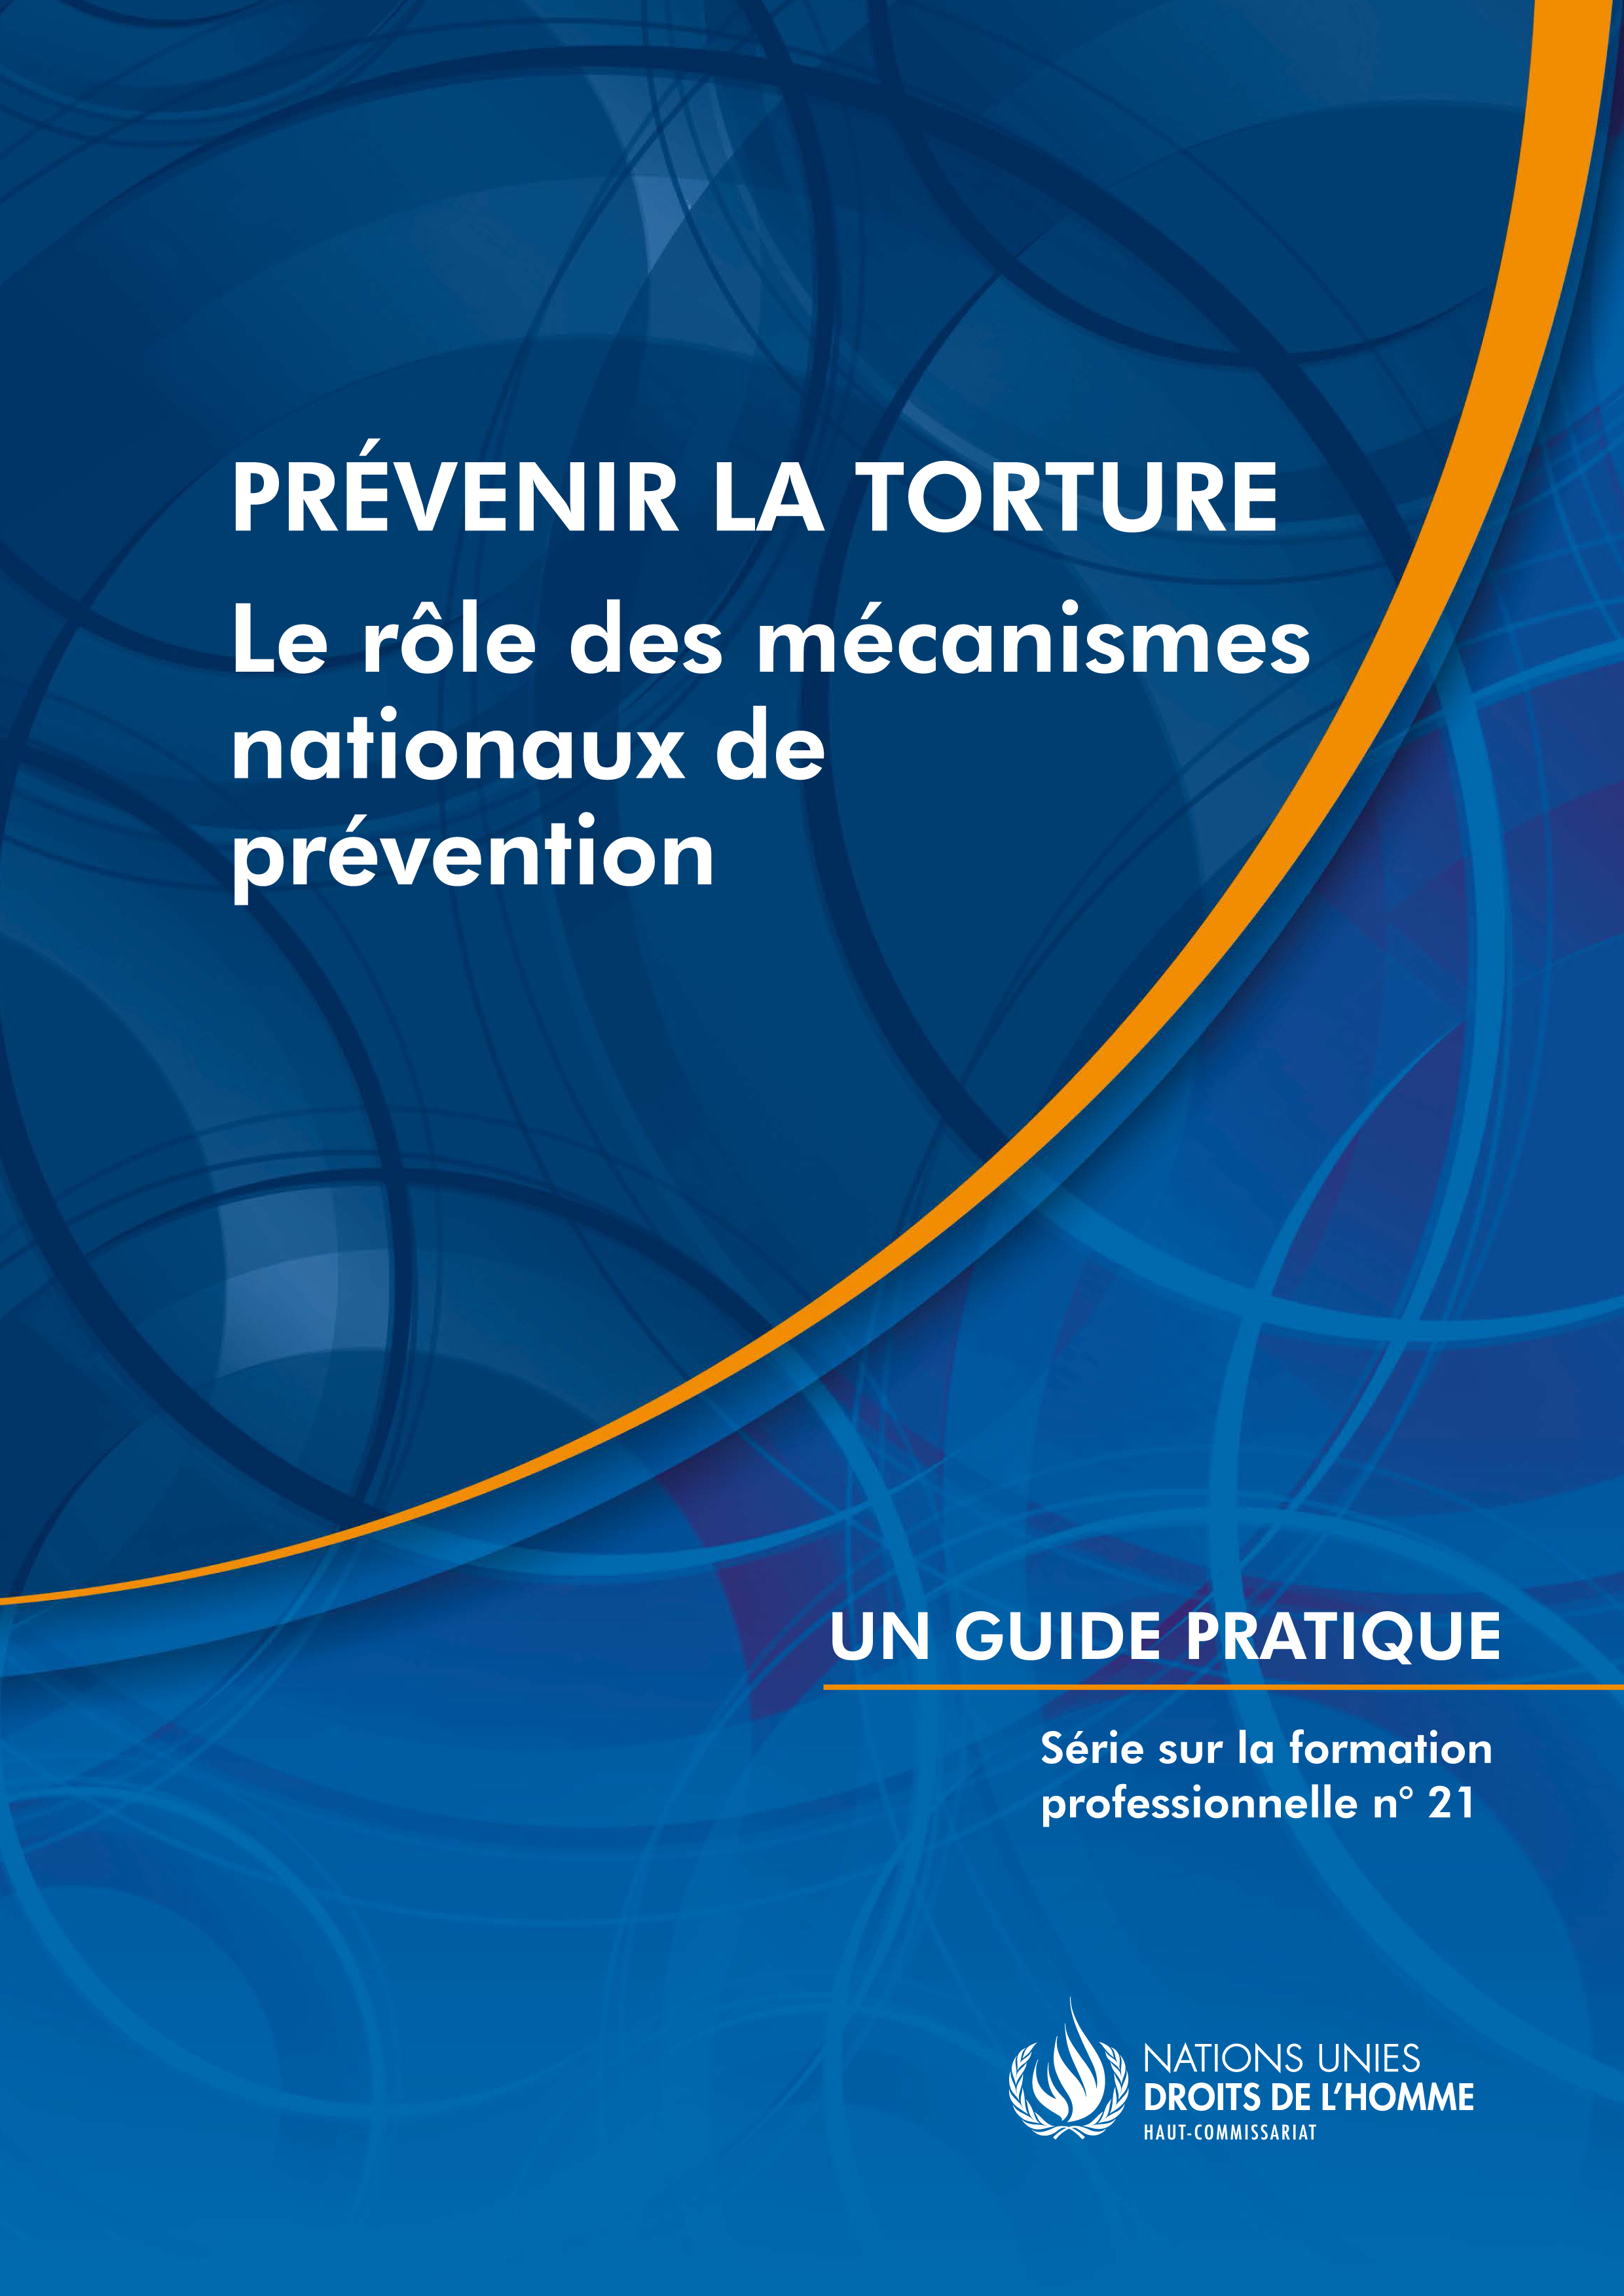 image of Prévenir la torture: Le rôle des mécanismes nationaux de prévention - un guide pratique